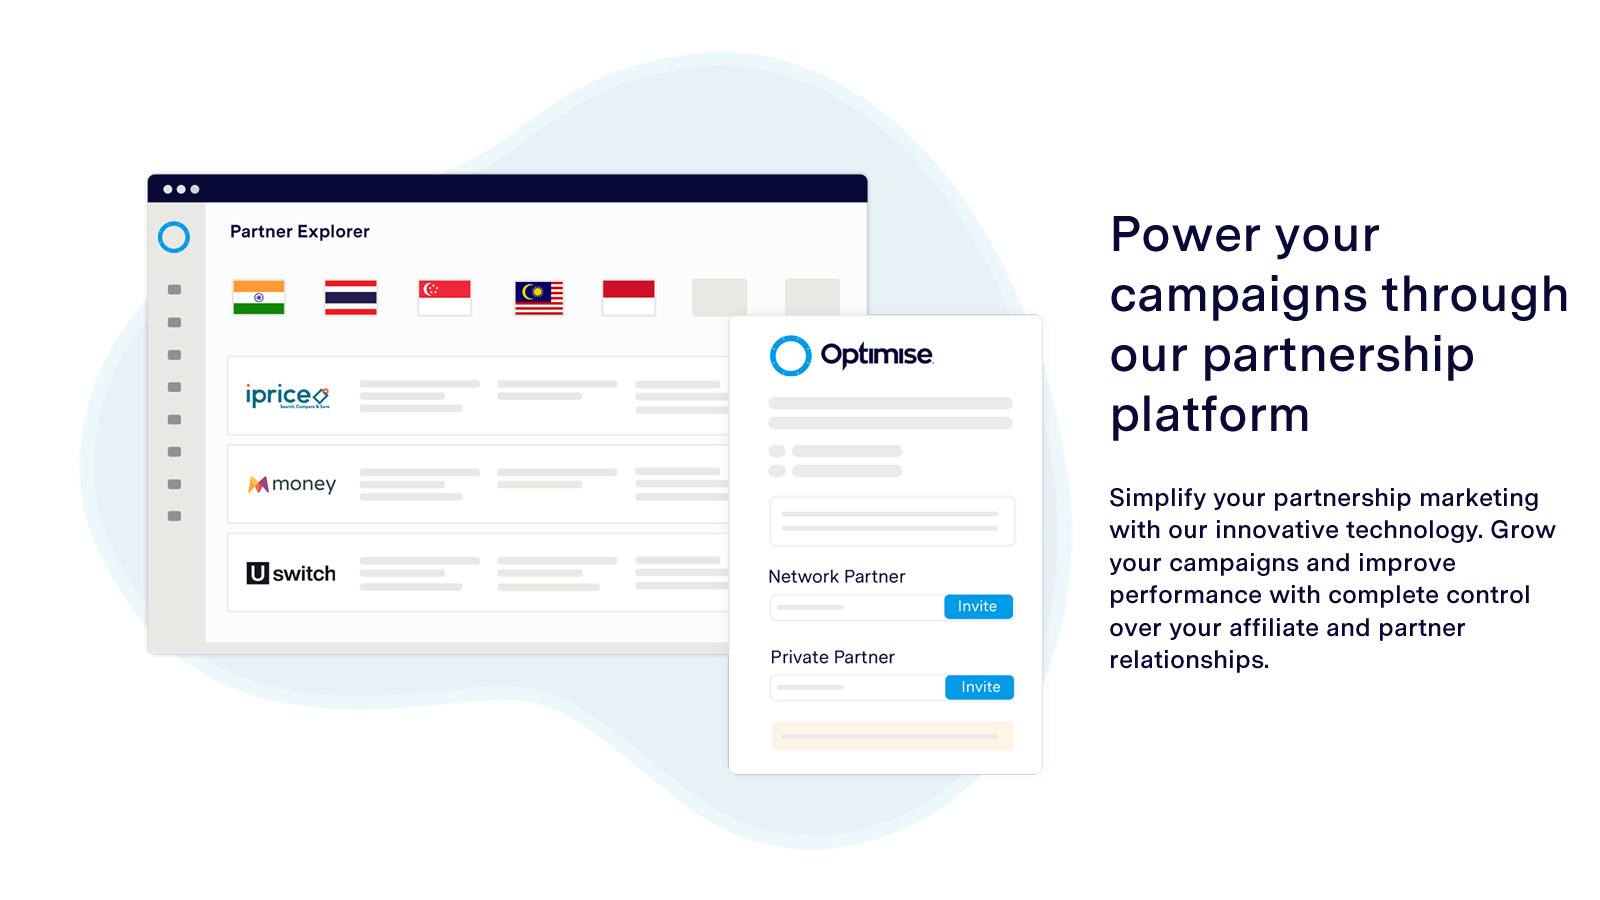 Potencia tus campañas a través de nuestra plataforma de asociación